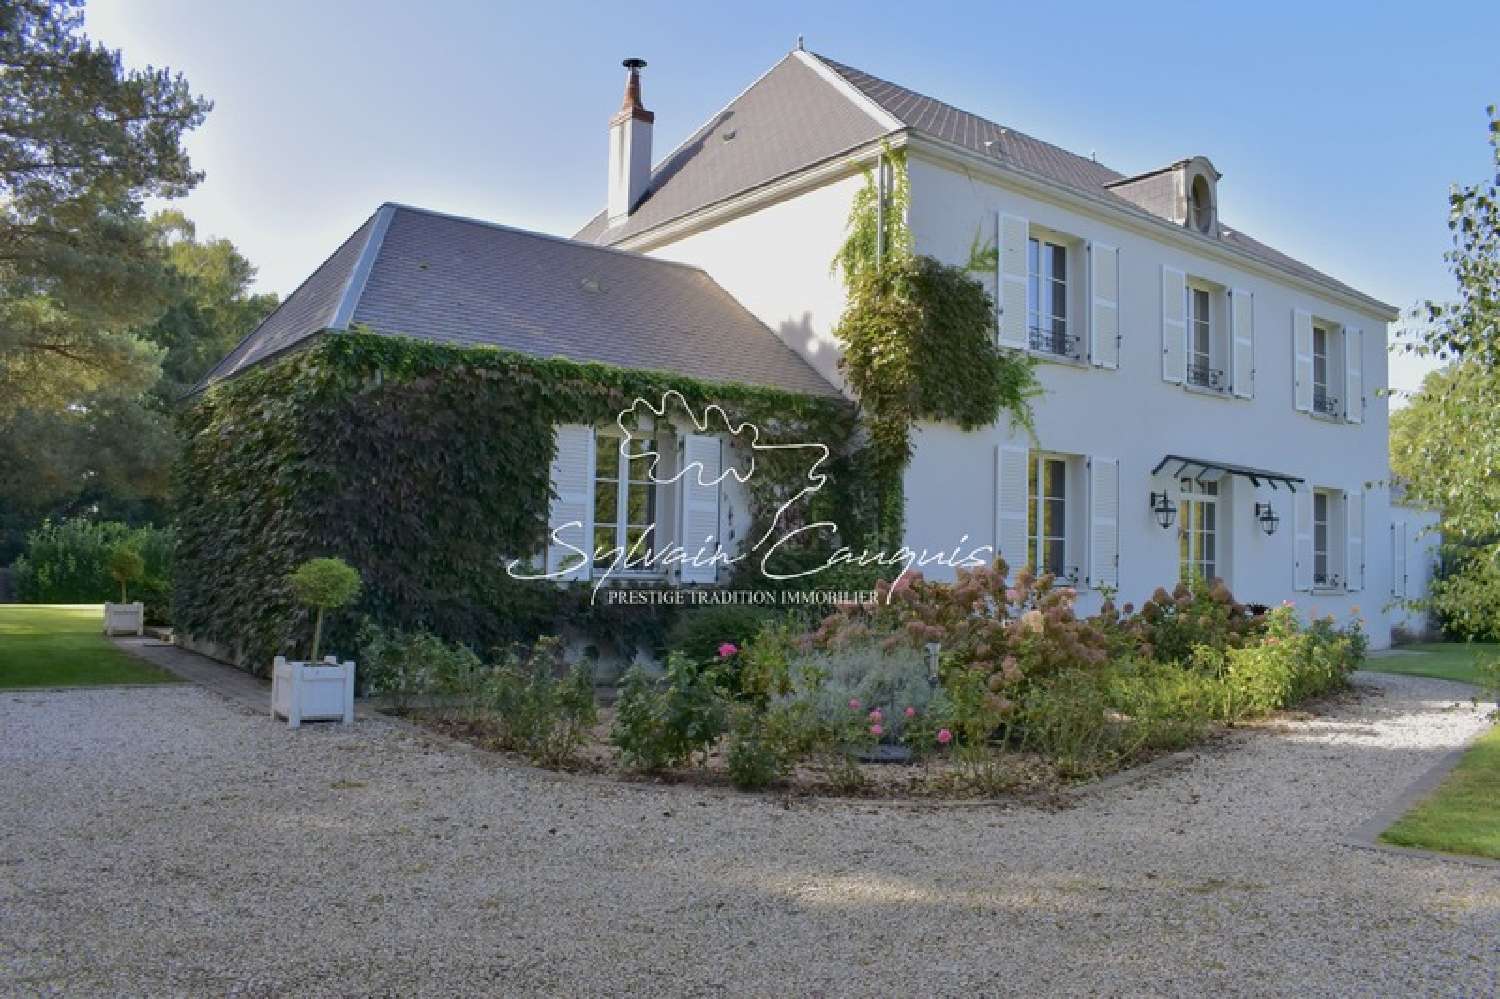  à vendre maison bourgeoise Sully-sur-Loire Loiret 1